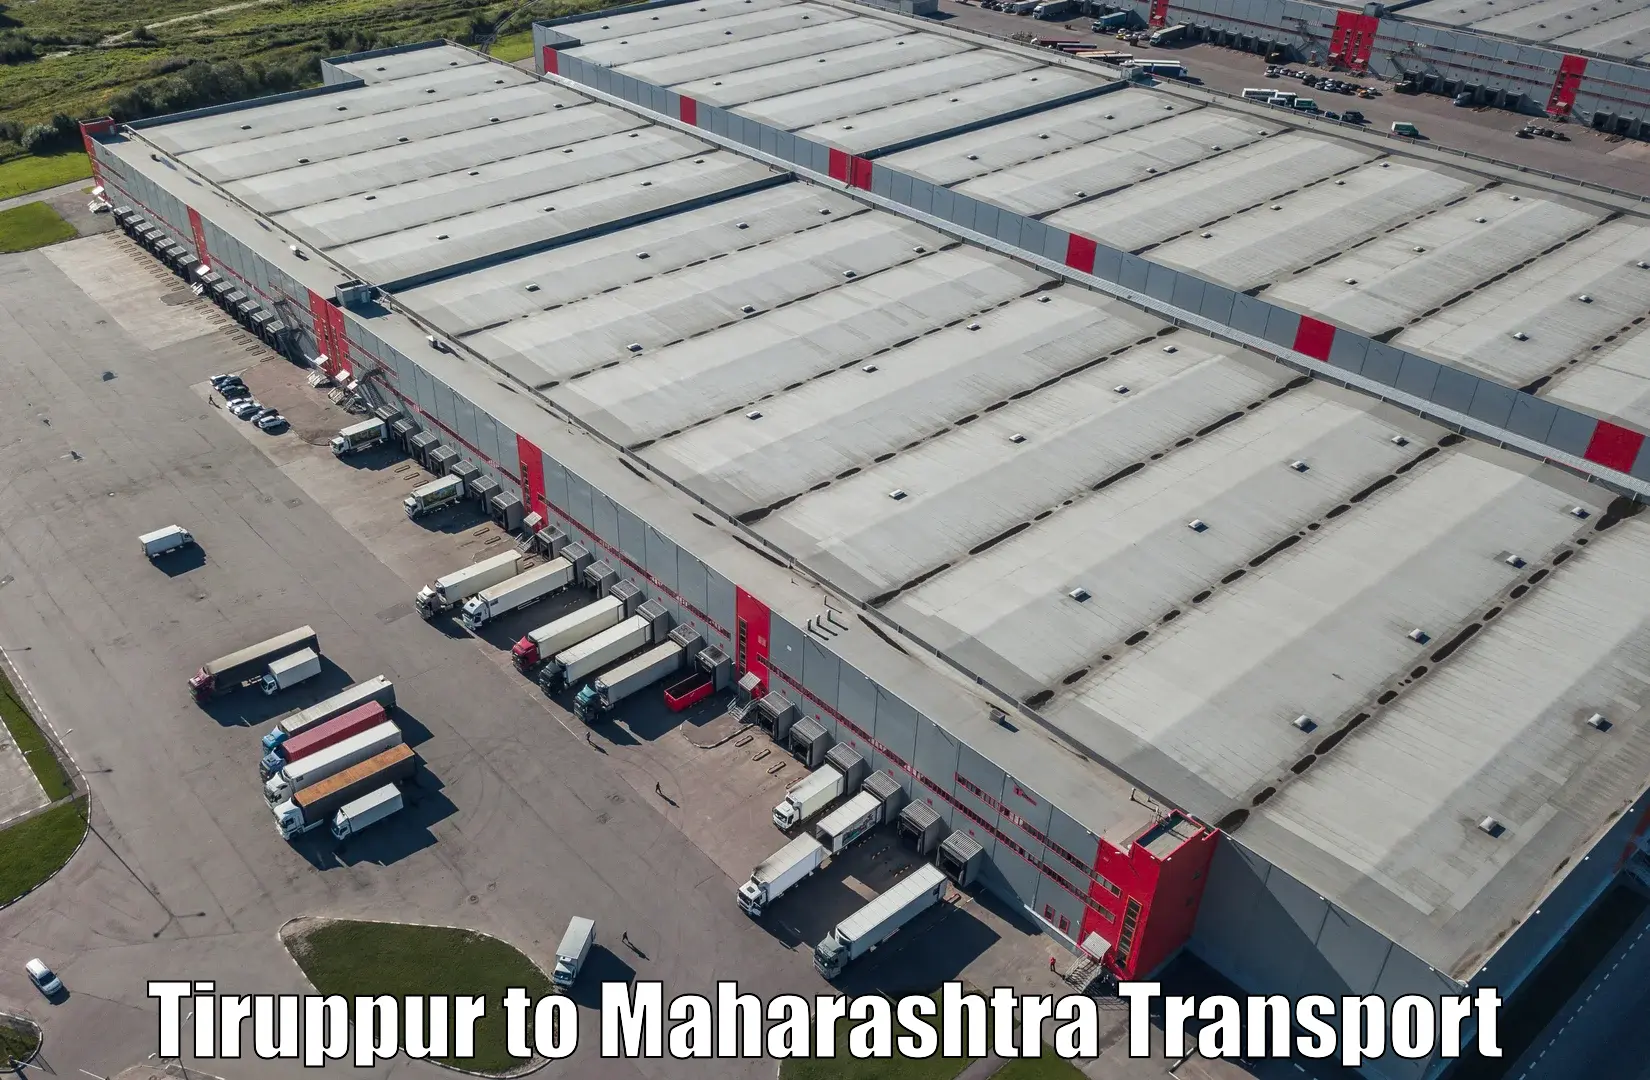 Furniture transport service Tiruppur to Mandrup